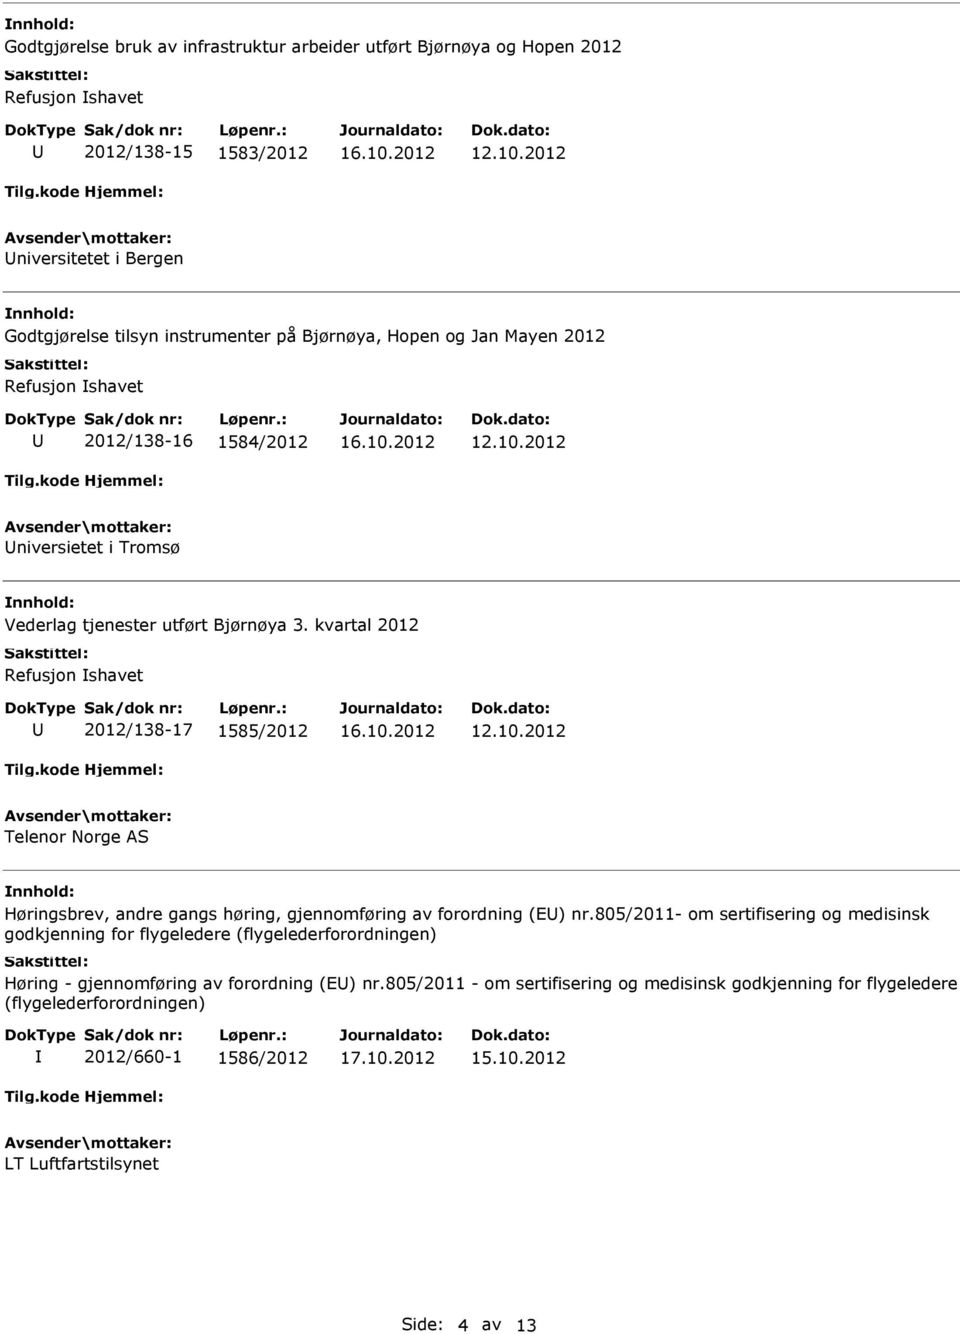 kvartal 2012 Refusjon shavet 2012/138-17 1585/2012 Telenor Norge AS Høringsbrev, andre gangs høring, gjennomføring av forordning (E) nr.